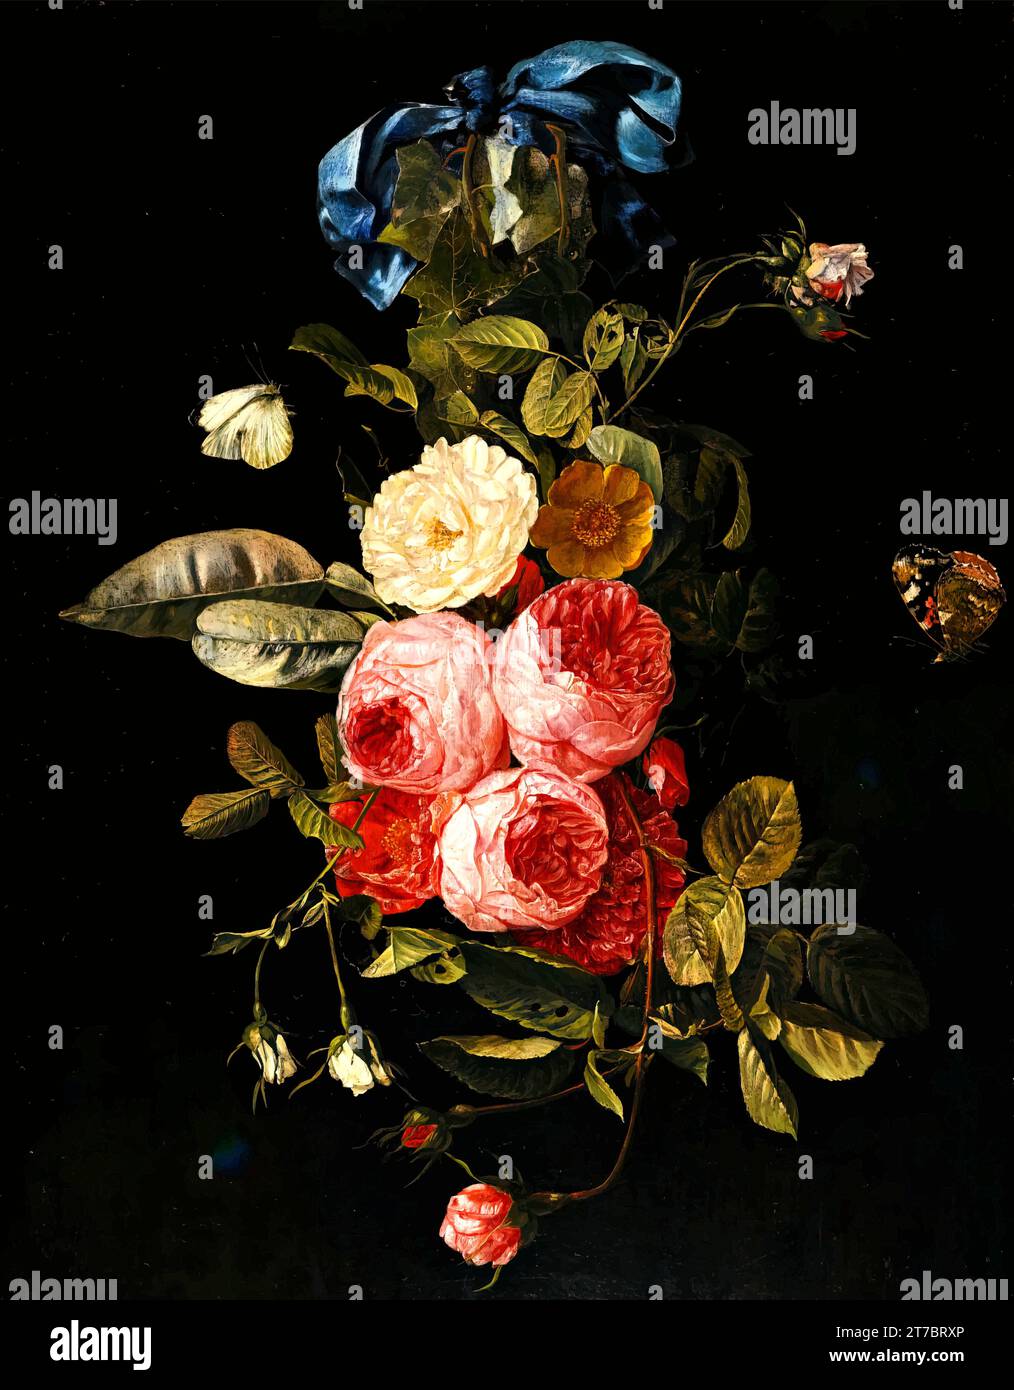 'Carstian Luyckx - nature morte de roses roses, jaunes et blanches suspendues à un ruban bleu avec un amiral rouge : un chef-d'œuvre d'Art classique' Illustration de Vecteur